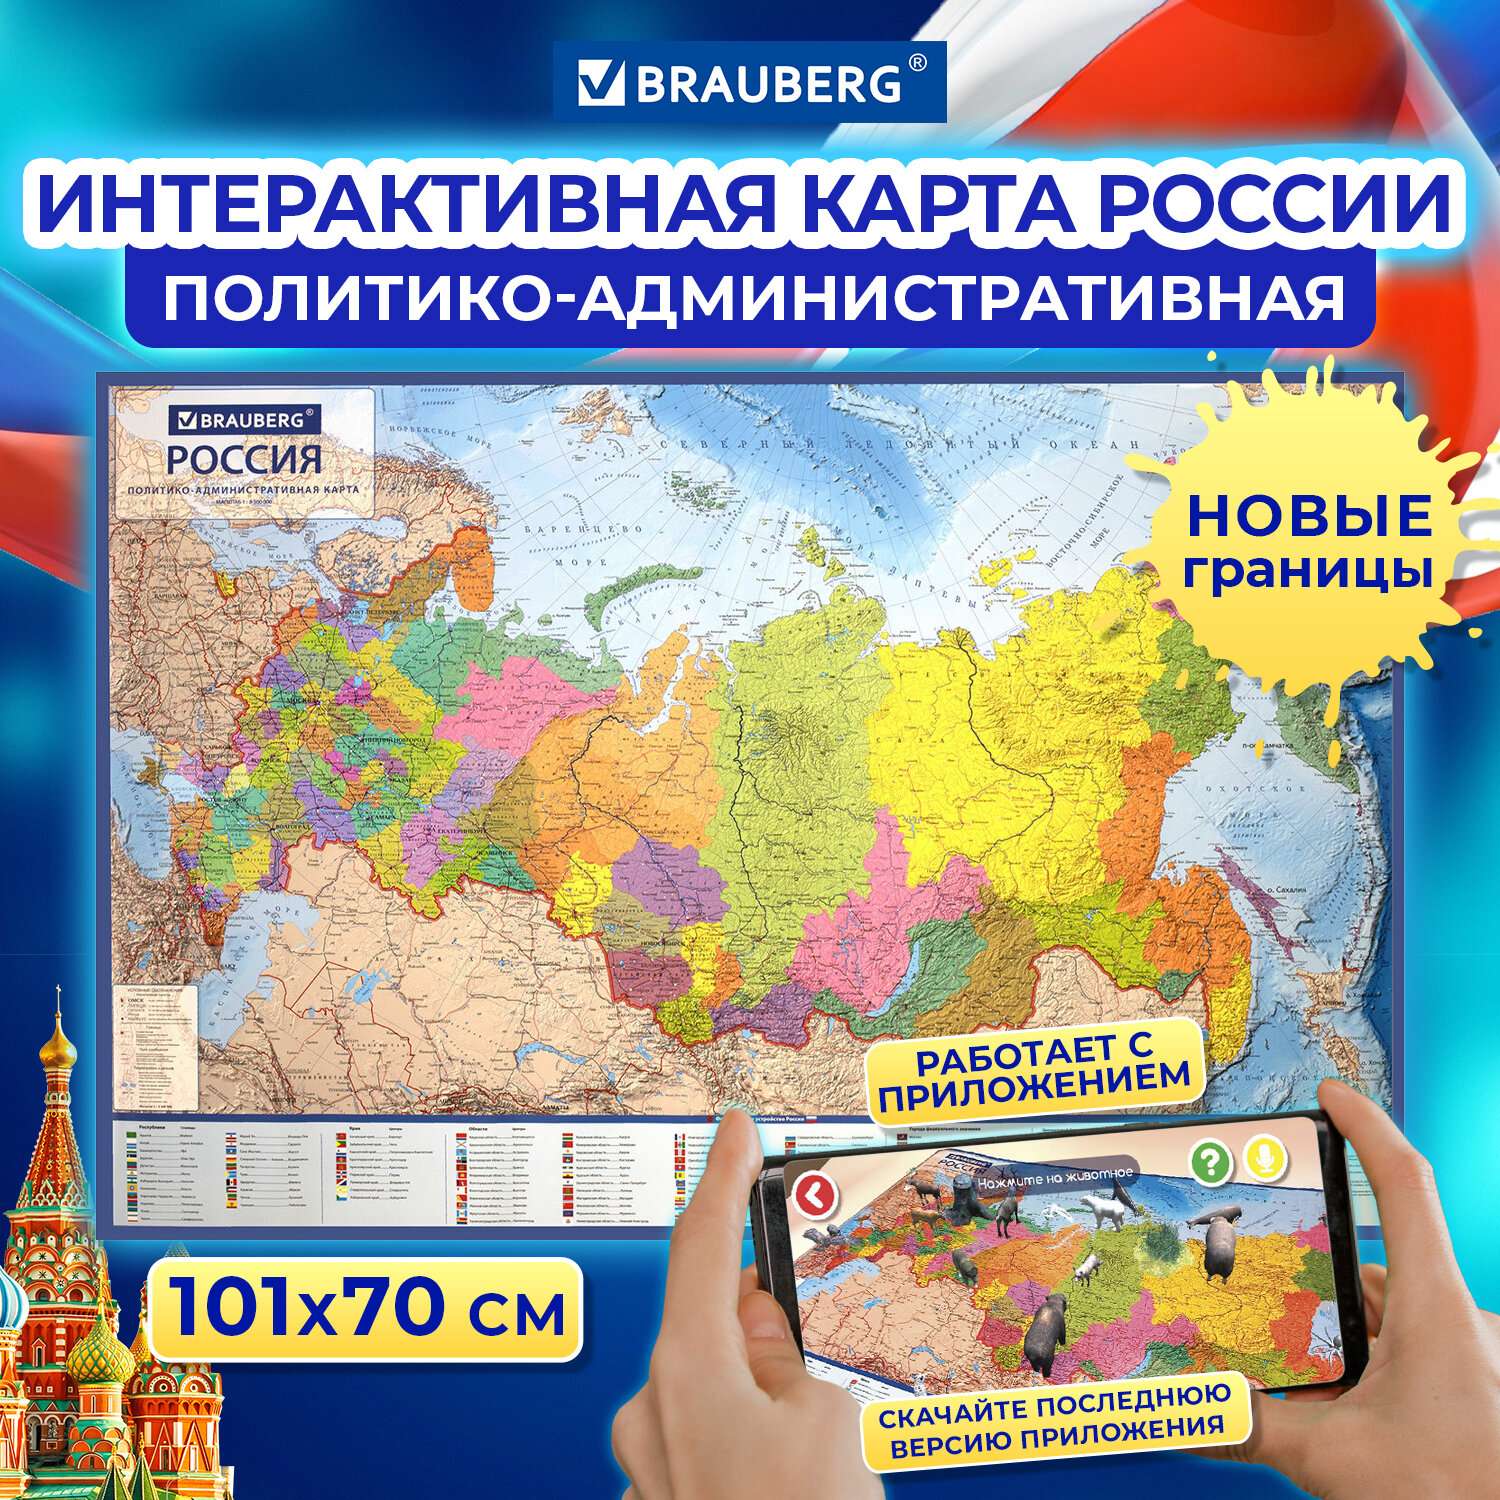 Карта России Brauberg политическая настенная 101х70см 1:8.5М интерактивная политико-административная - фото 1